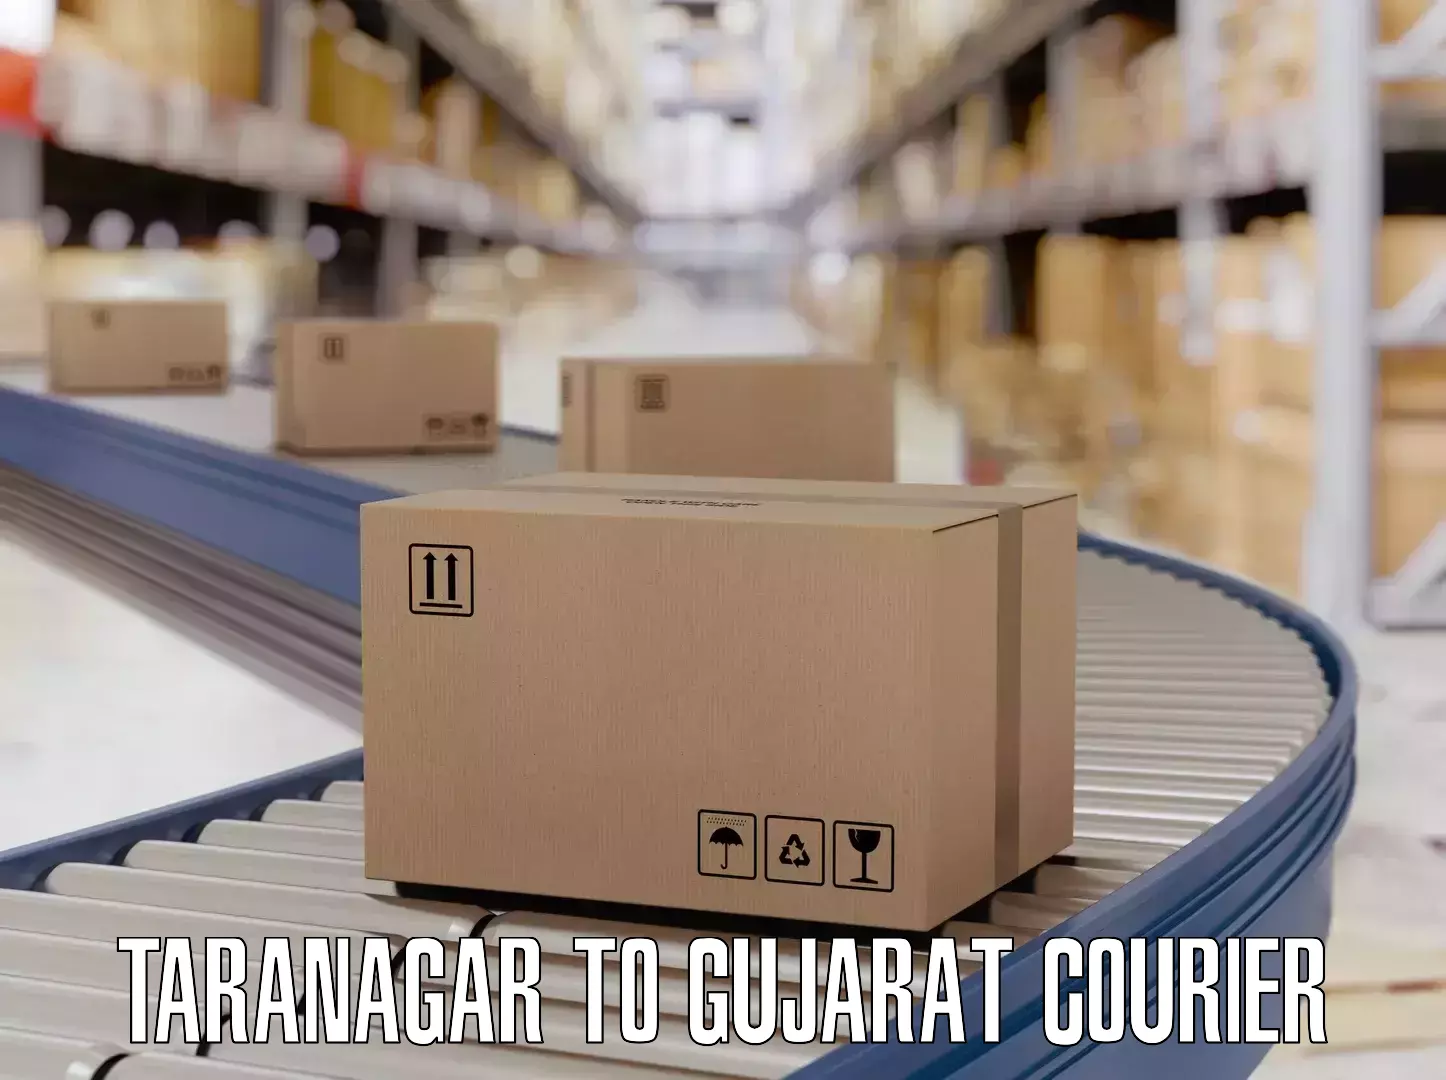 Luggage delivery app Taranagar to Chotila